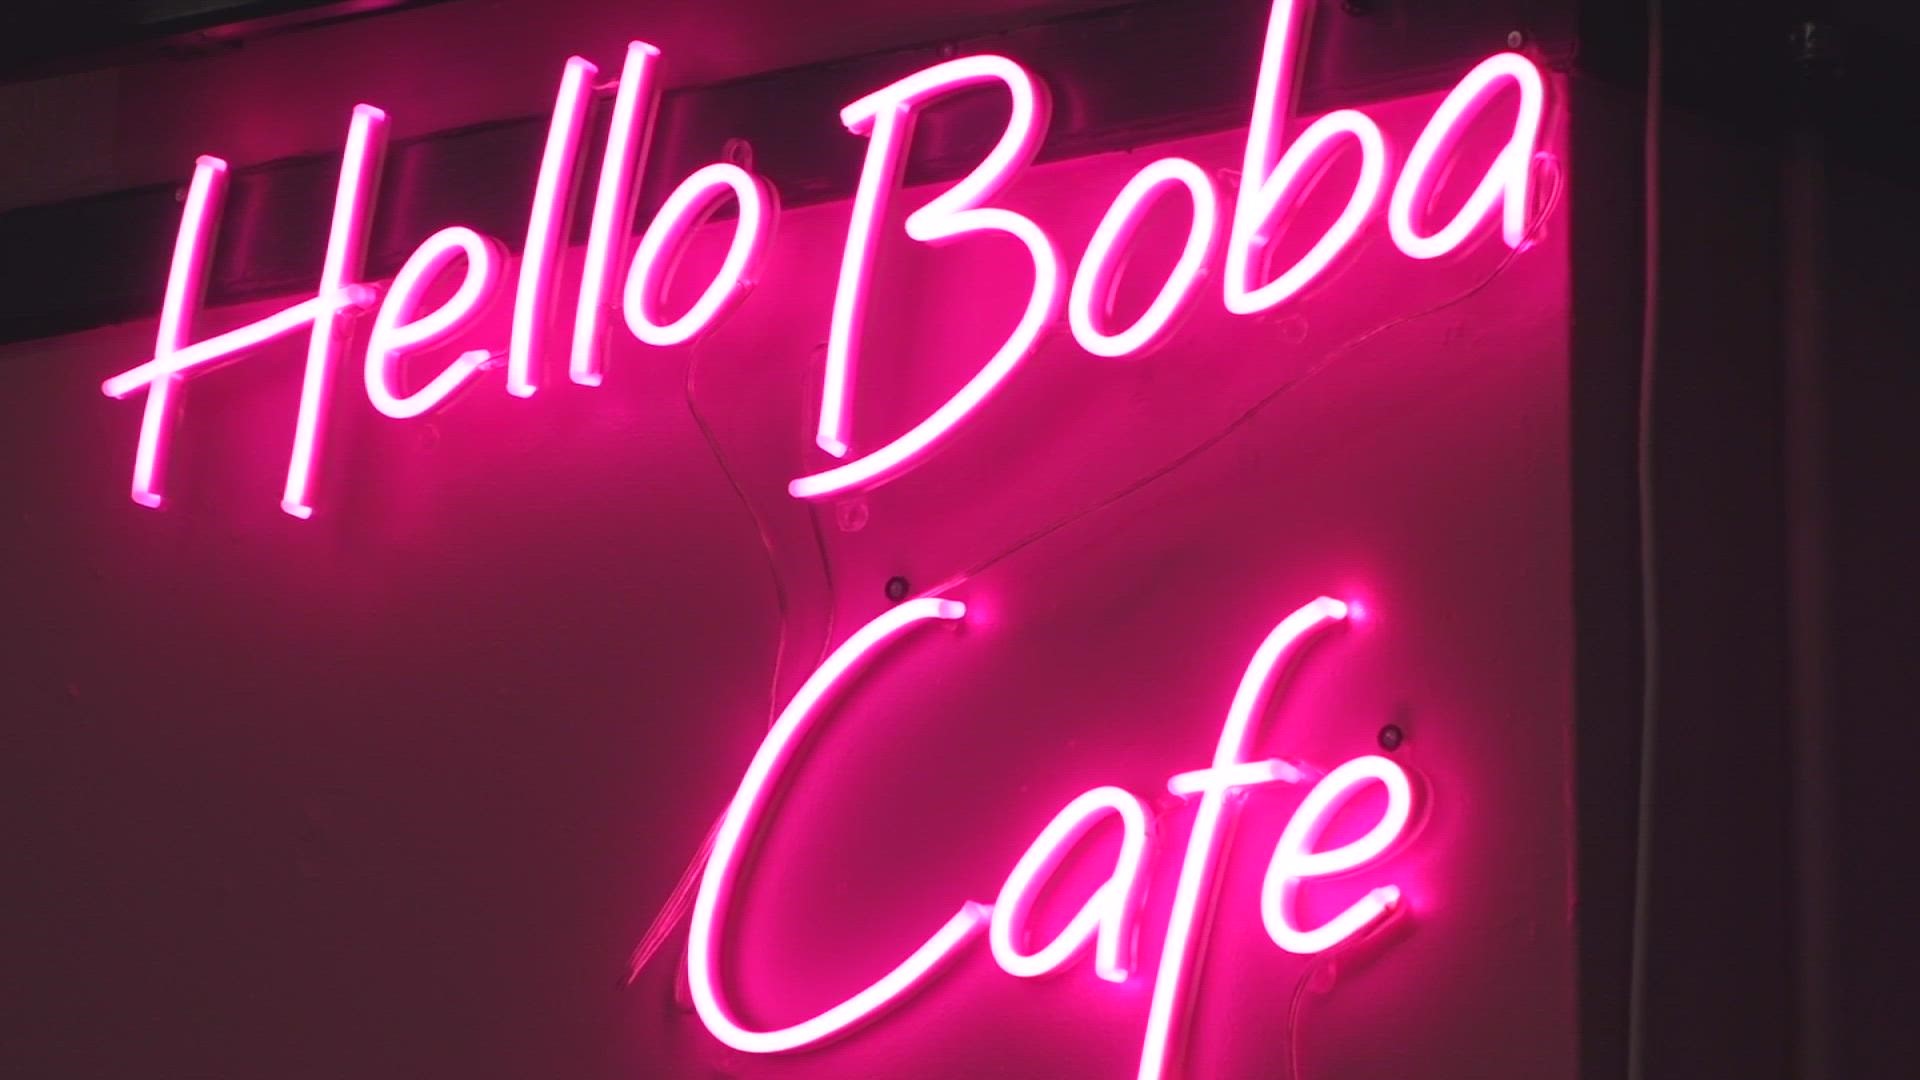 Hello Boba Cafe opens in downtown Macon GA  Macon Telegraph